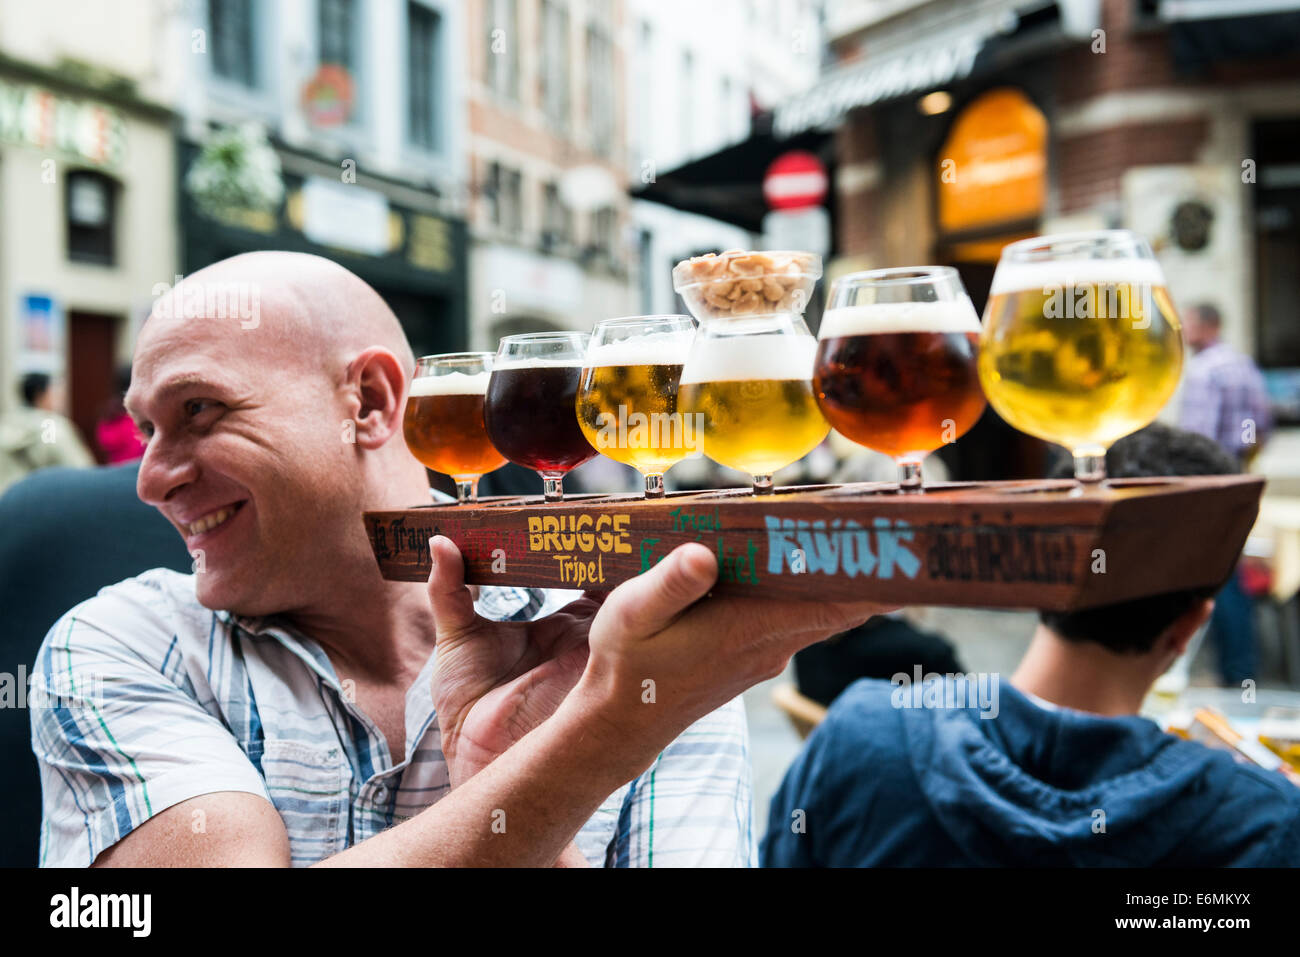 Cata de cerveza en uno de los bares en el centro histórico de Bruselas. Foto de stock